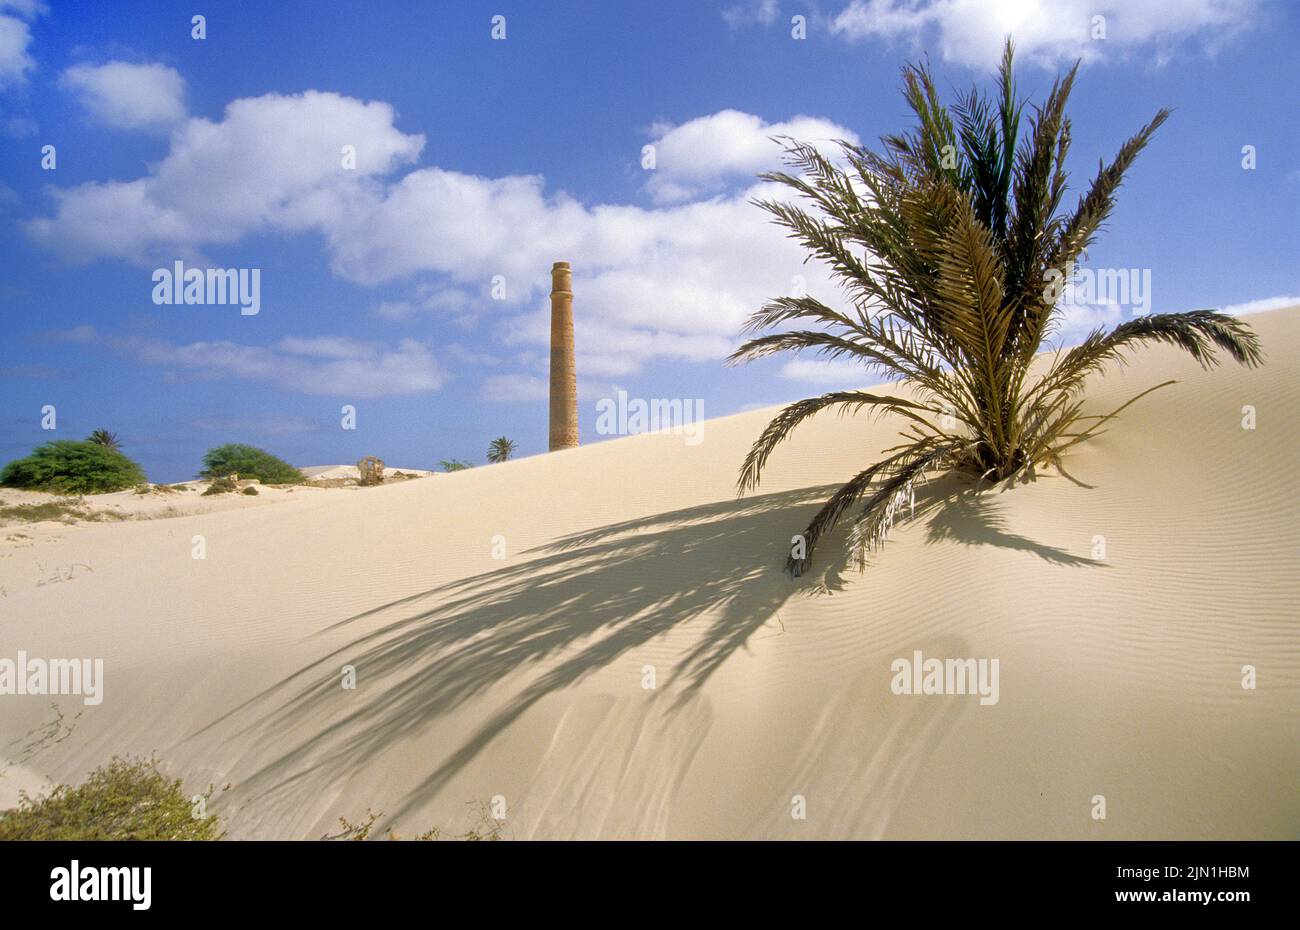 Smokestack et dunes de sable avec un jeune palmier à l'ancien brickfield, Fabrica da Chad, Rabil, Boavista, Iles du Cap-Vert, Afrique Banque D'Images